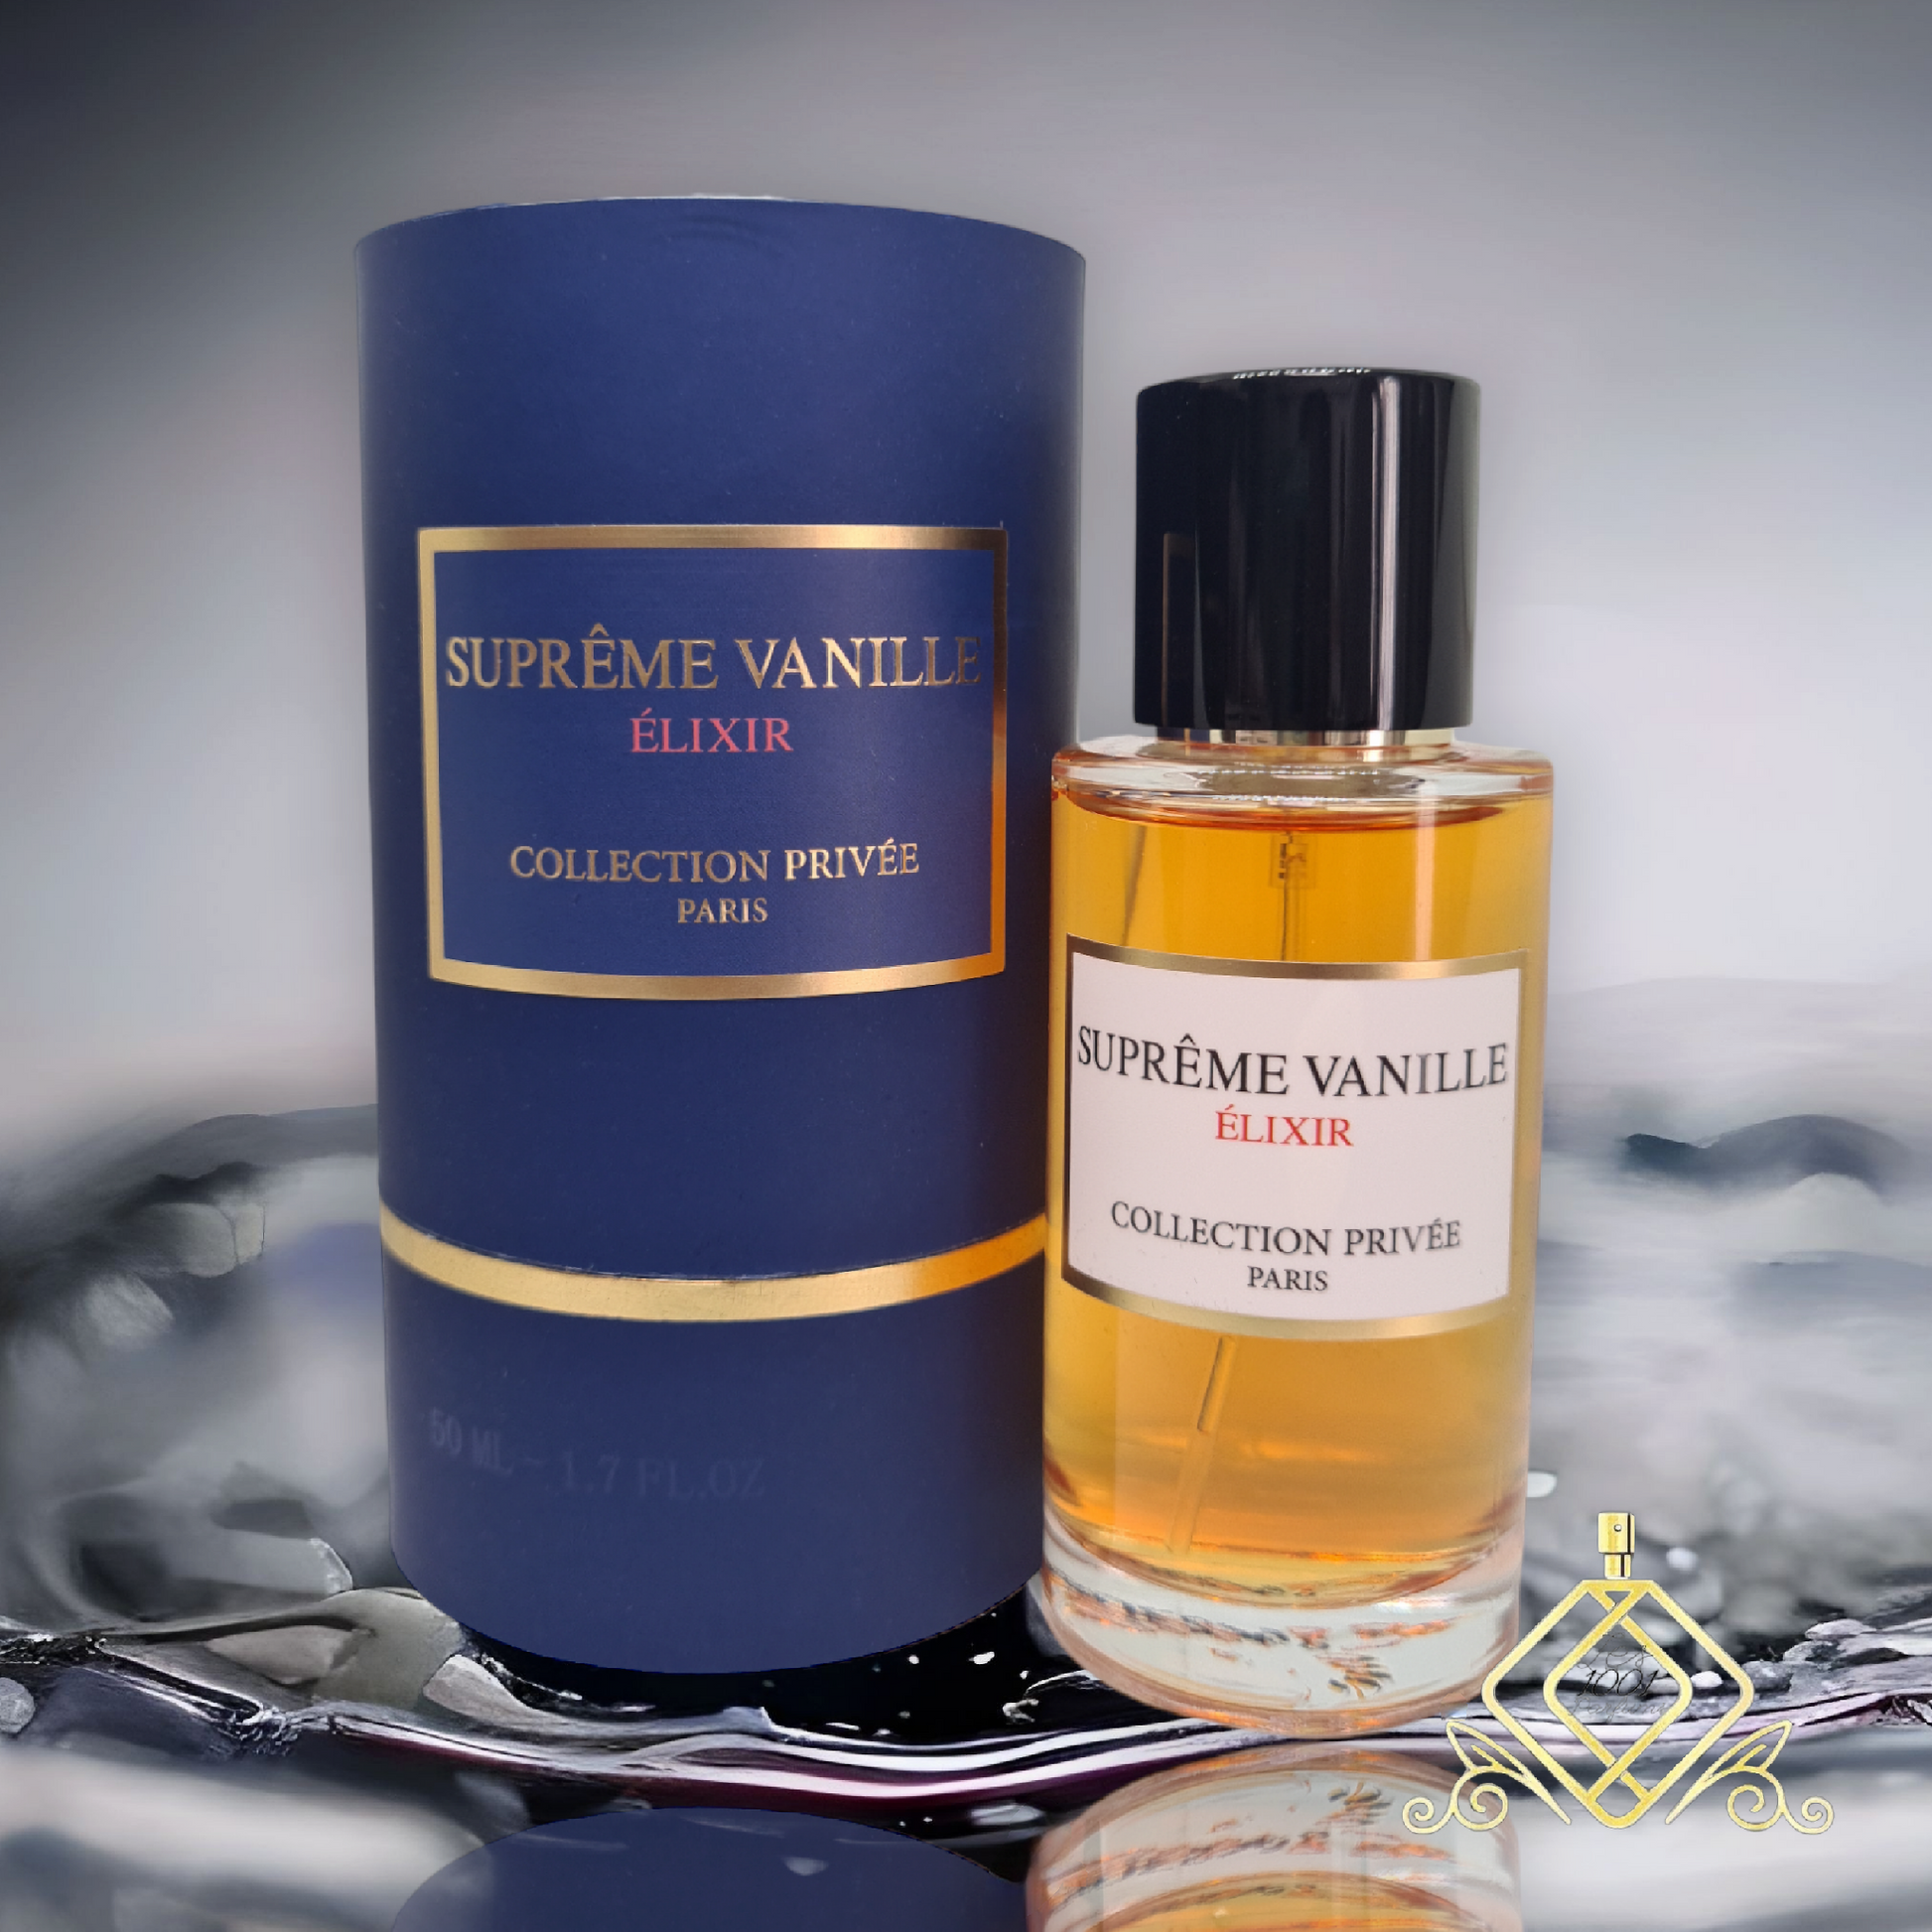 Suprème vanille élixir – Les 1001 parfums